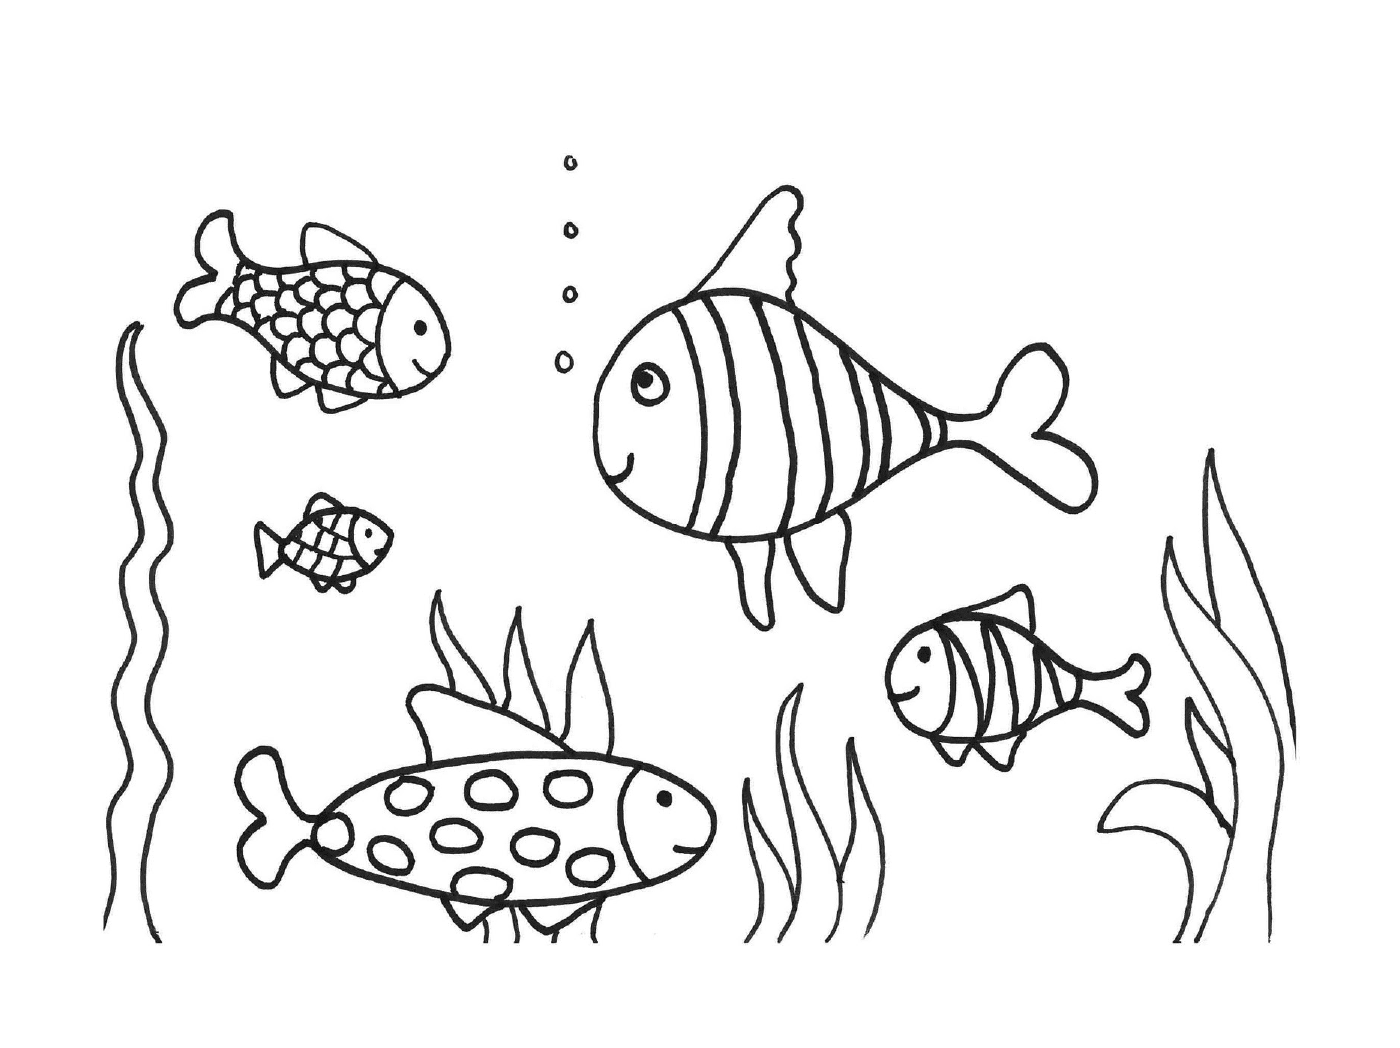  Viele Fische im Wasser 